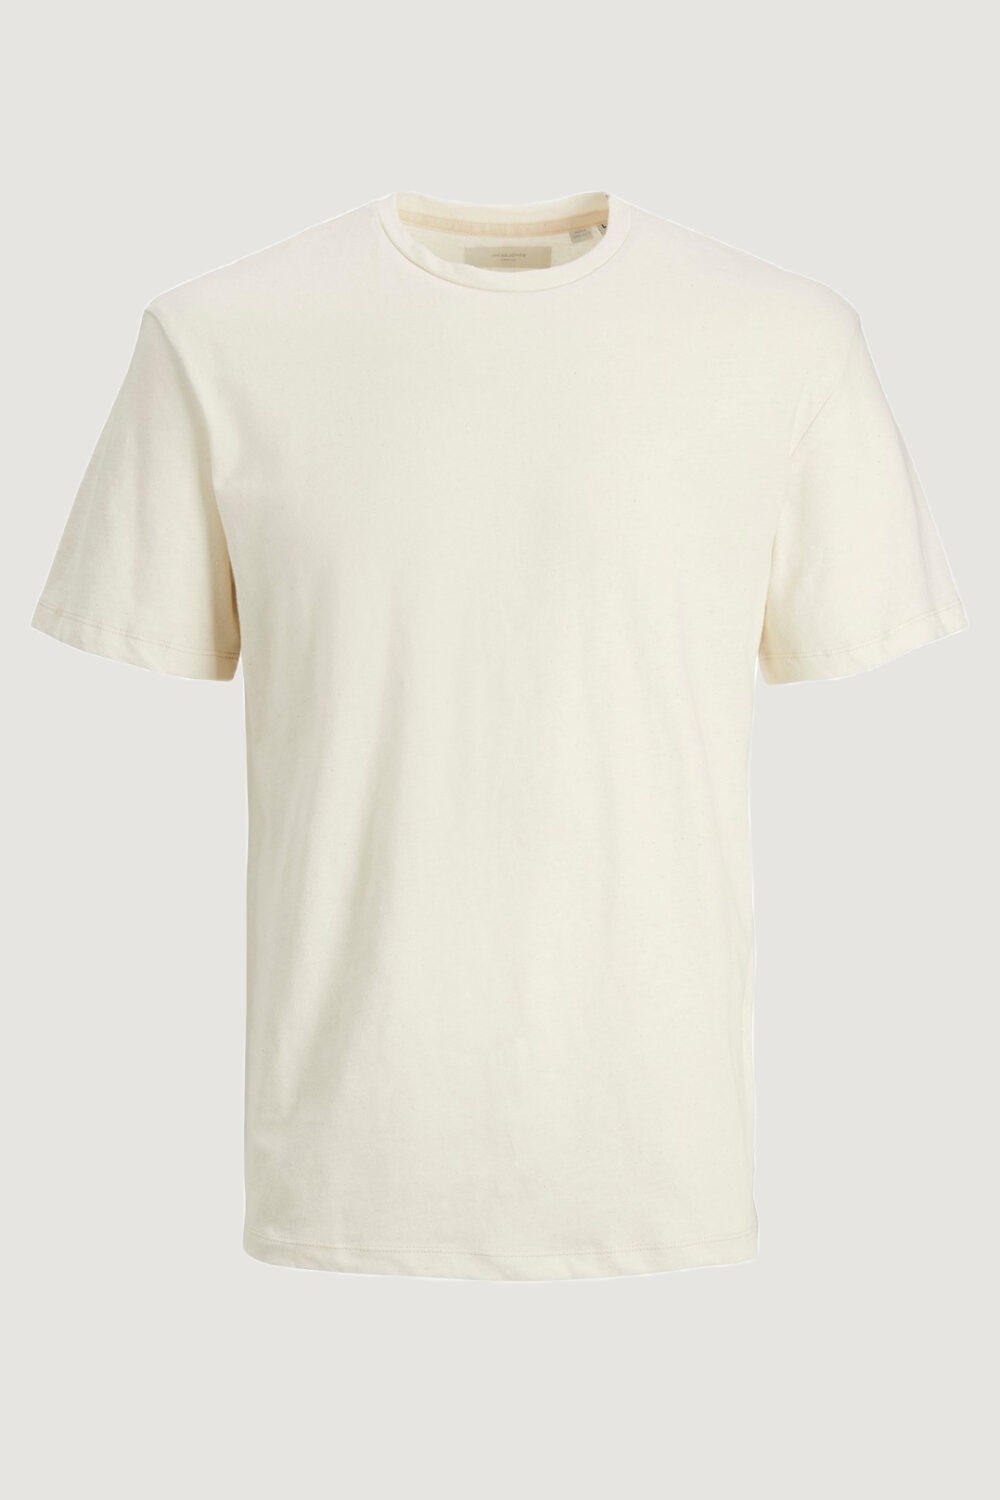 T-shirt Jack Jones jprcc soft linen blend tee ss solid ln Panna - Foto 2